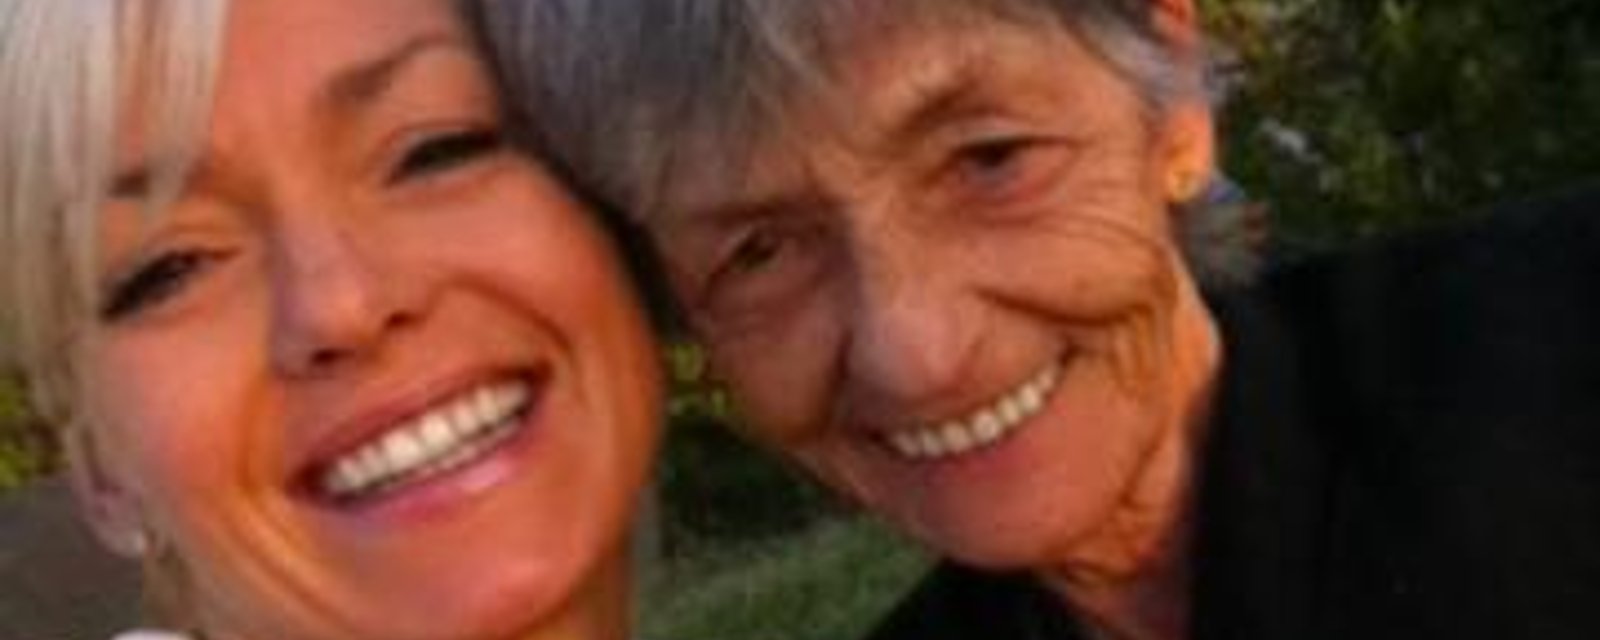 En deuil, Marie-Chantal Toupin rend un dernier hommage à sa maman